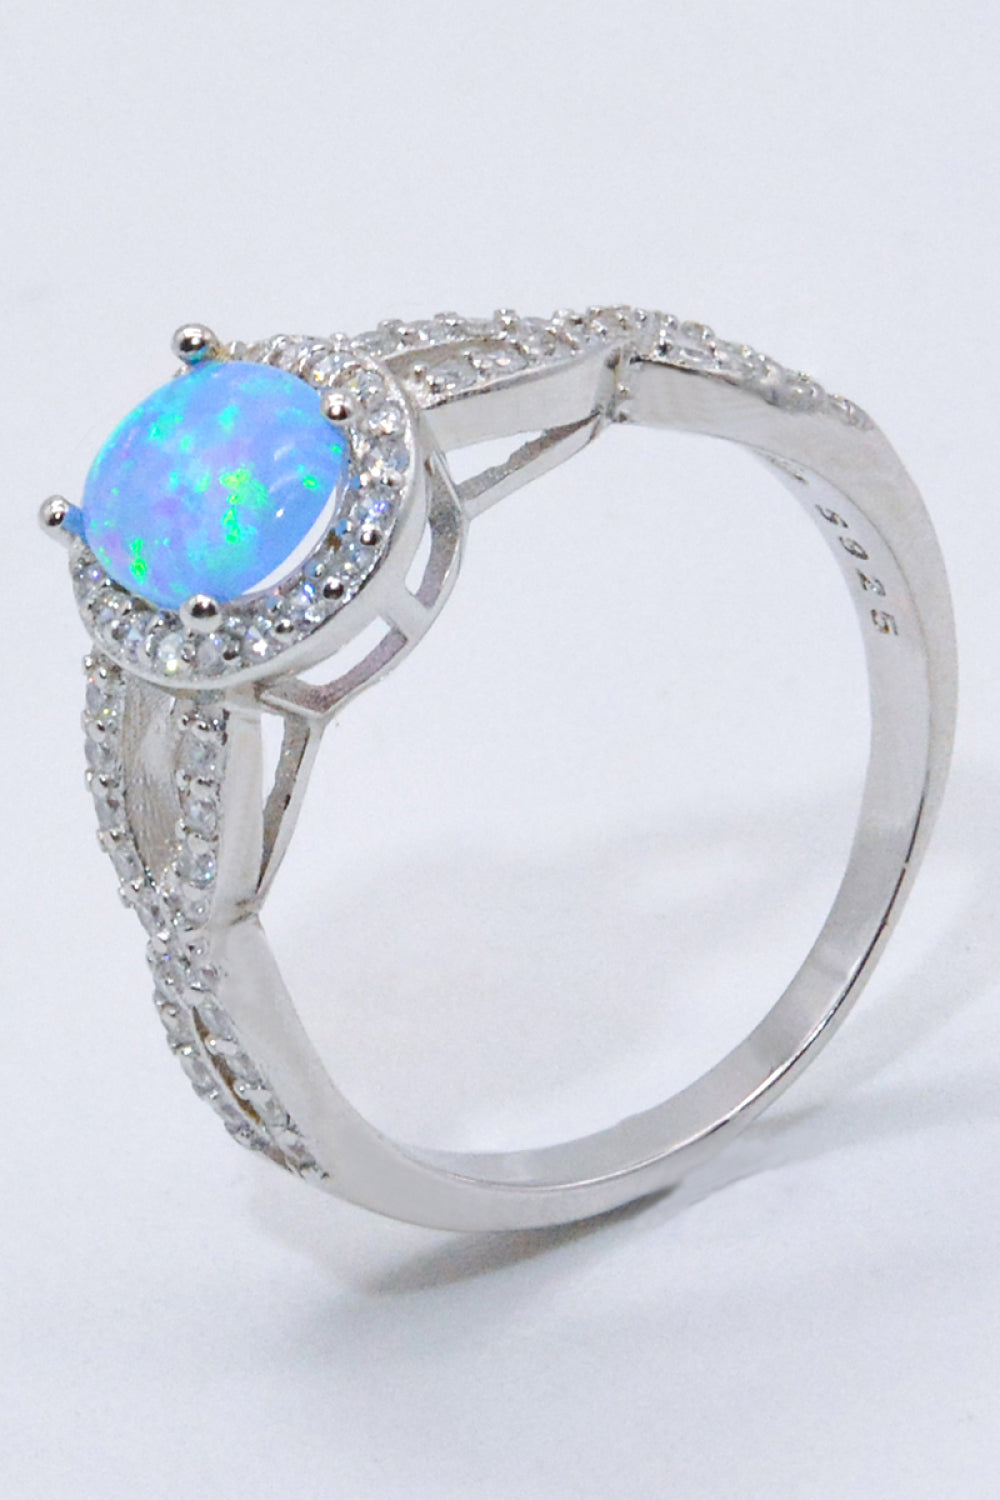 Australian Opal Sterling Silver Halo Ring